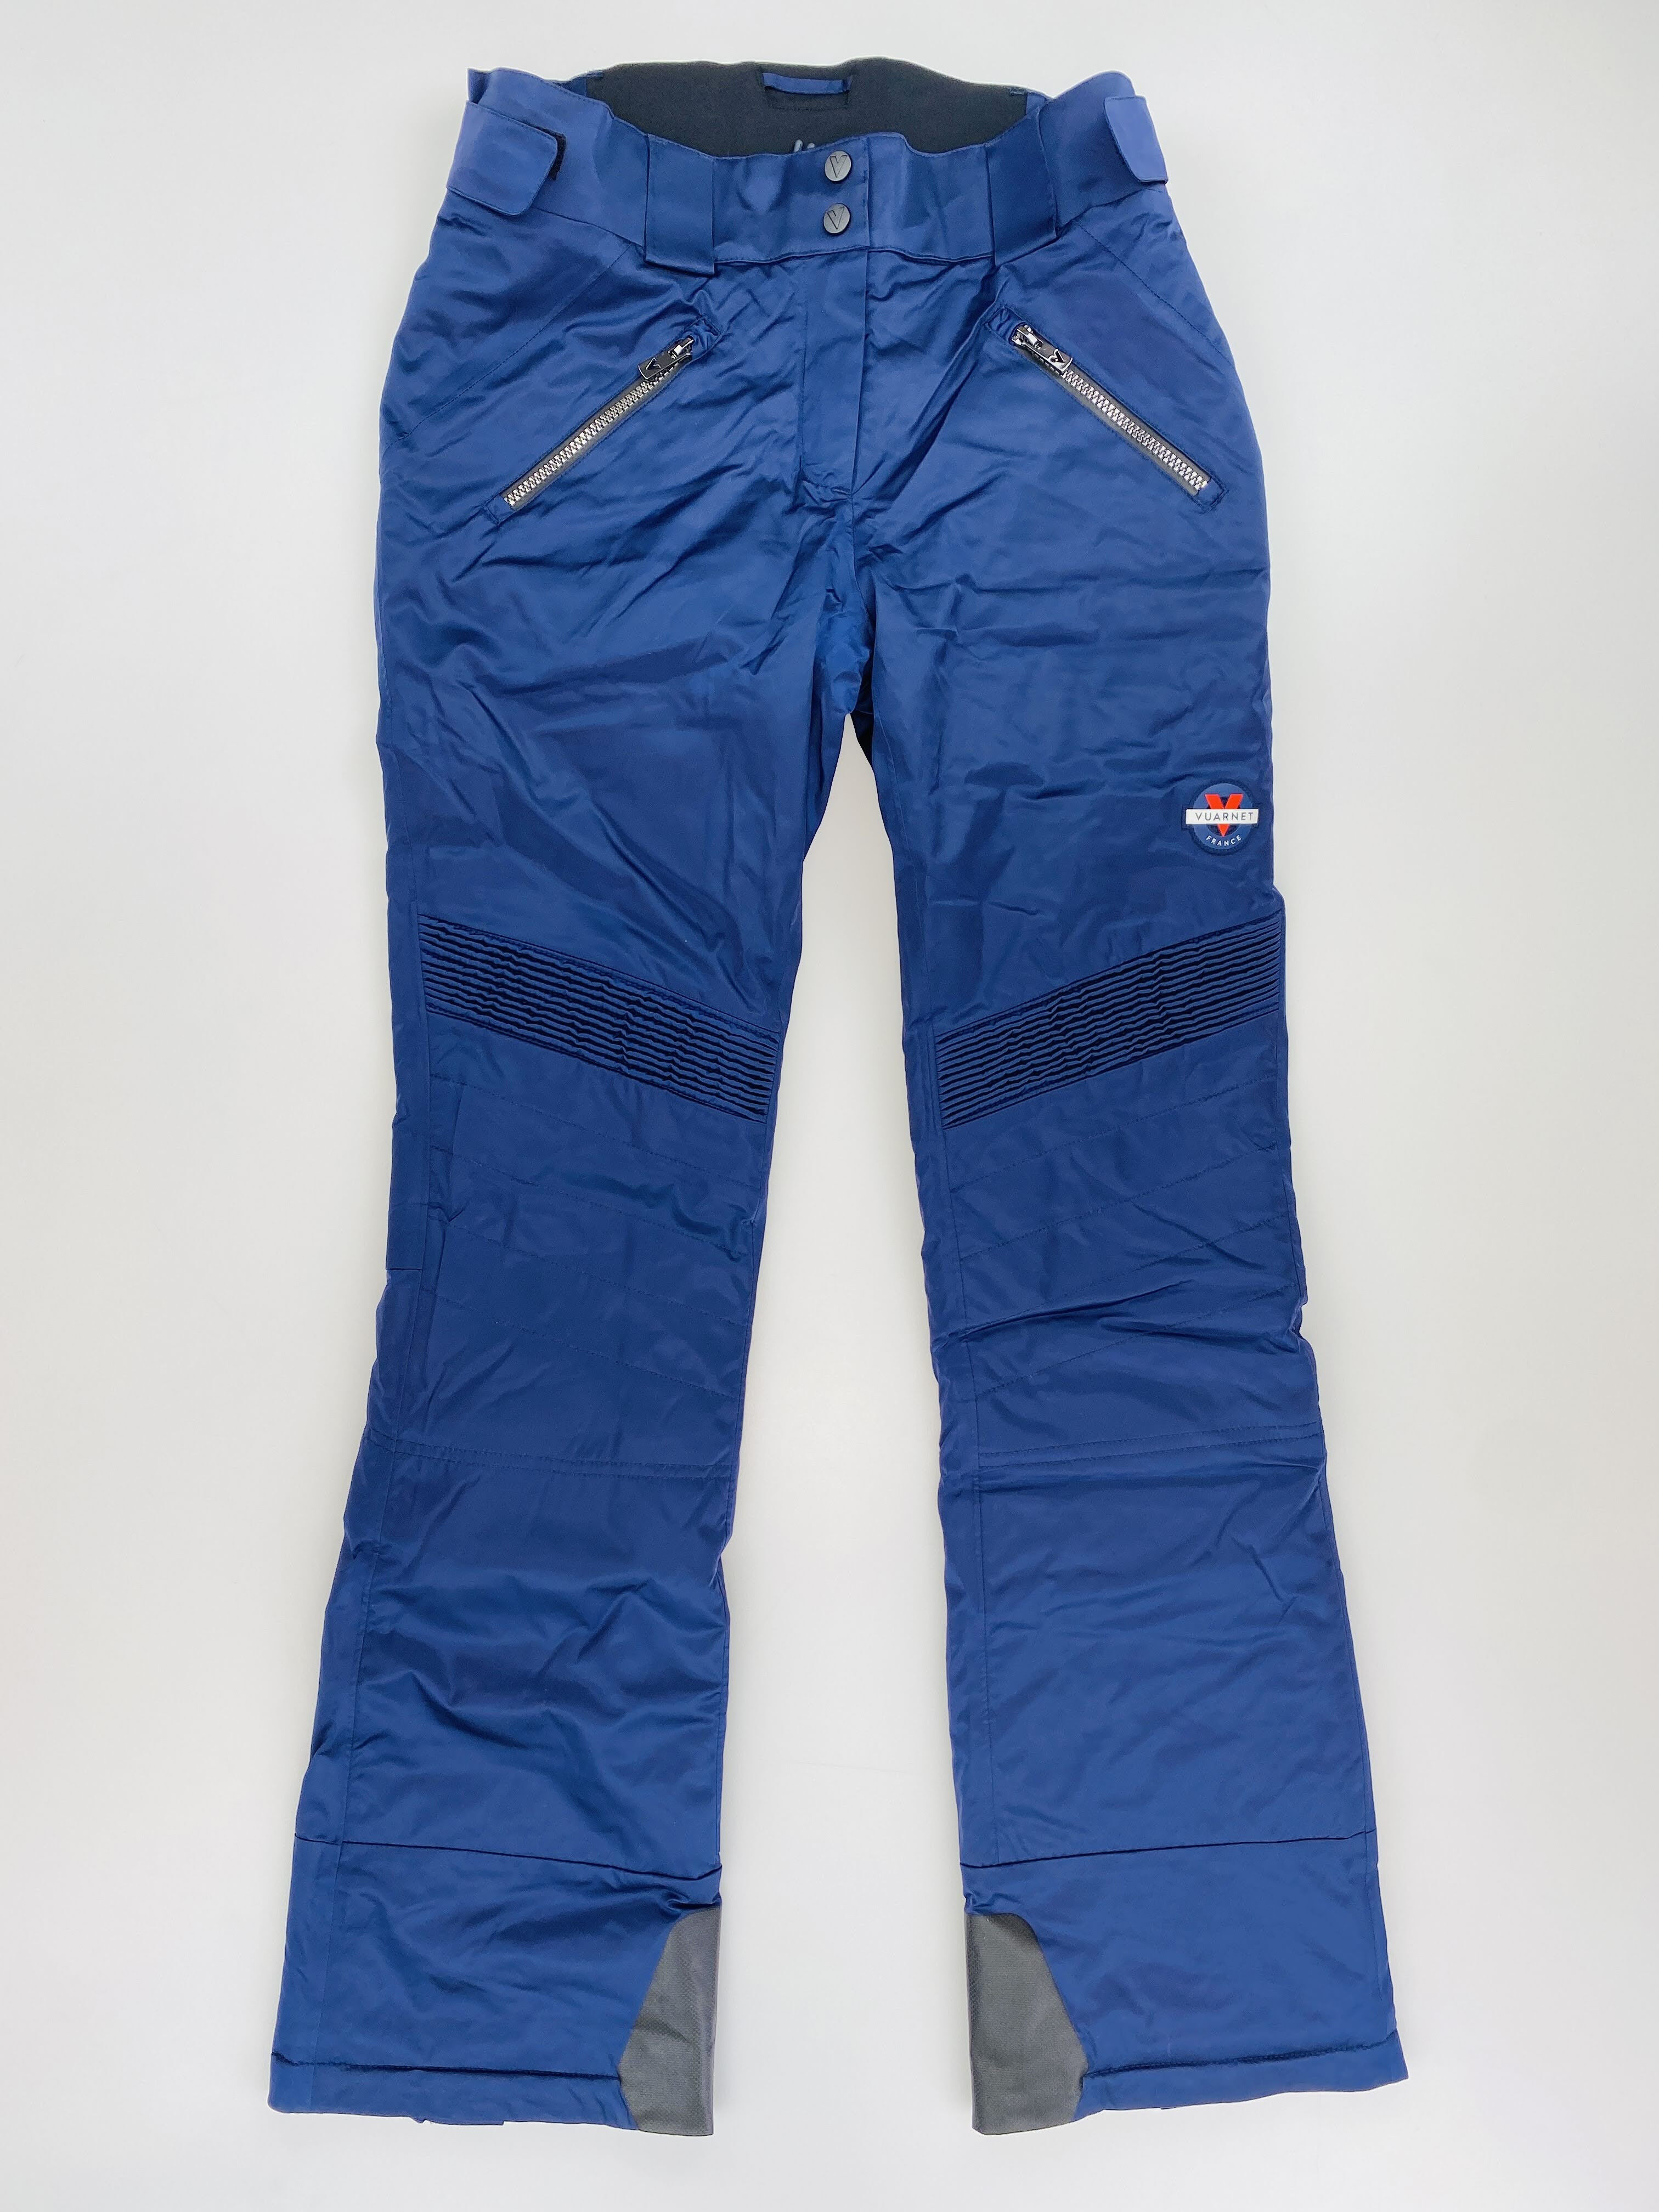 Vuarnet W'S Yakima Pant - Second Hand Dámské lyžařské kalhoty - Modrý - S | Hardloop